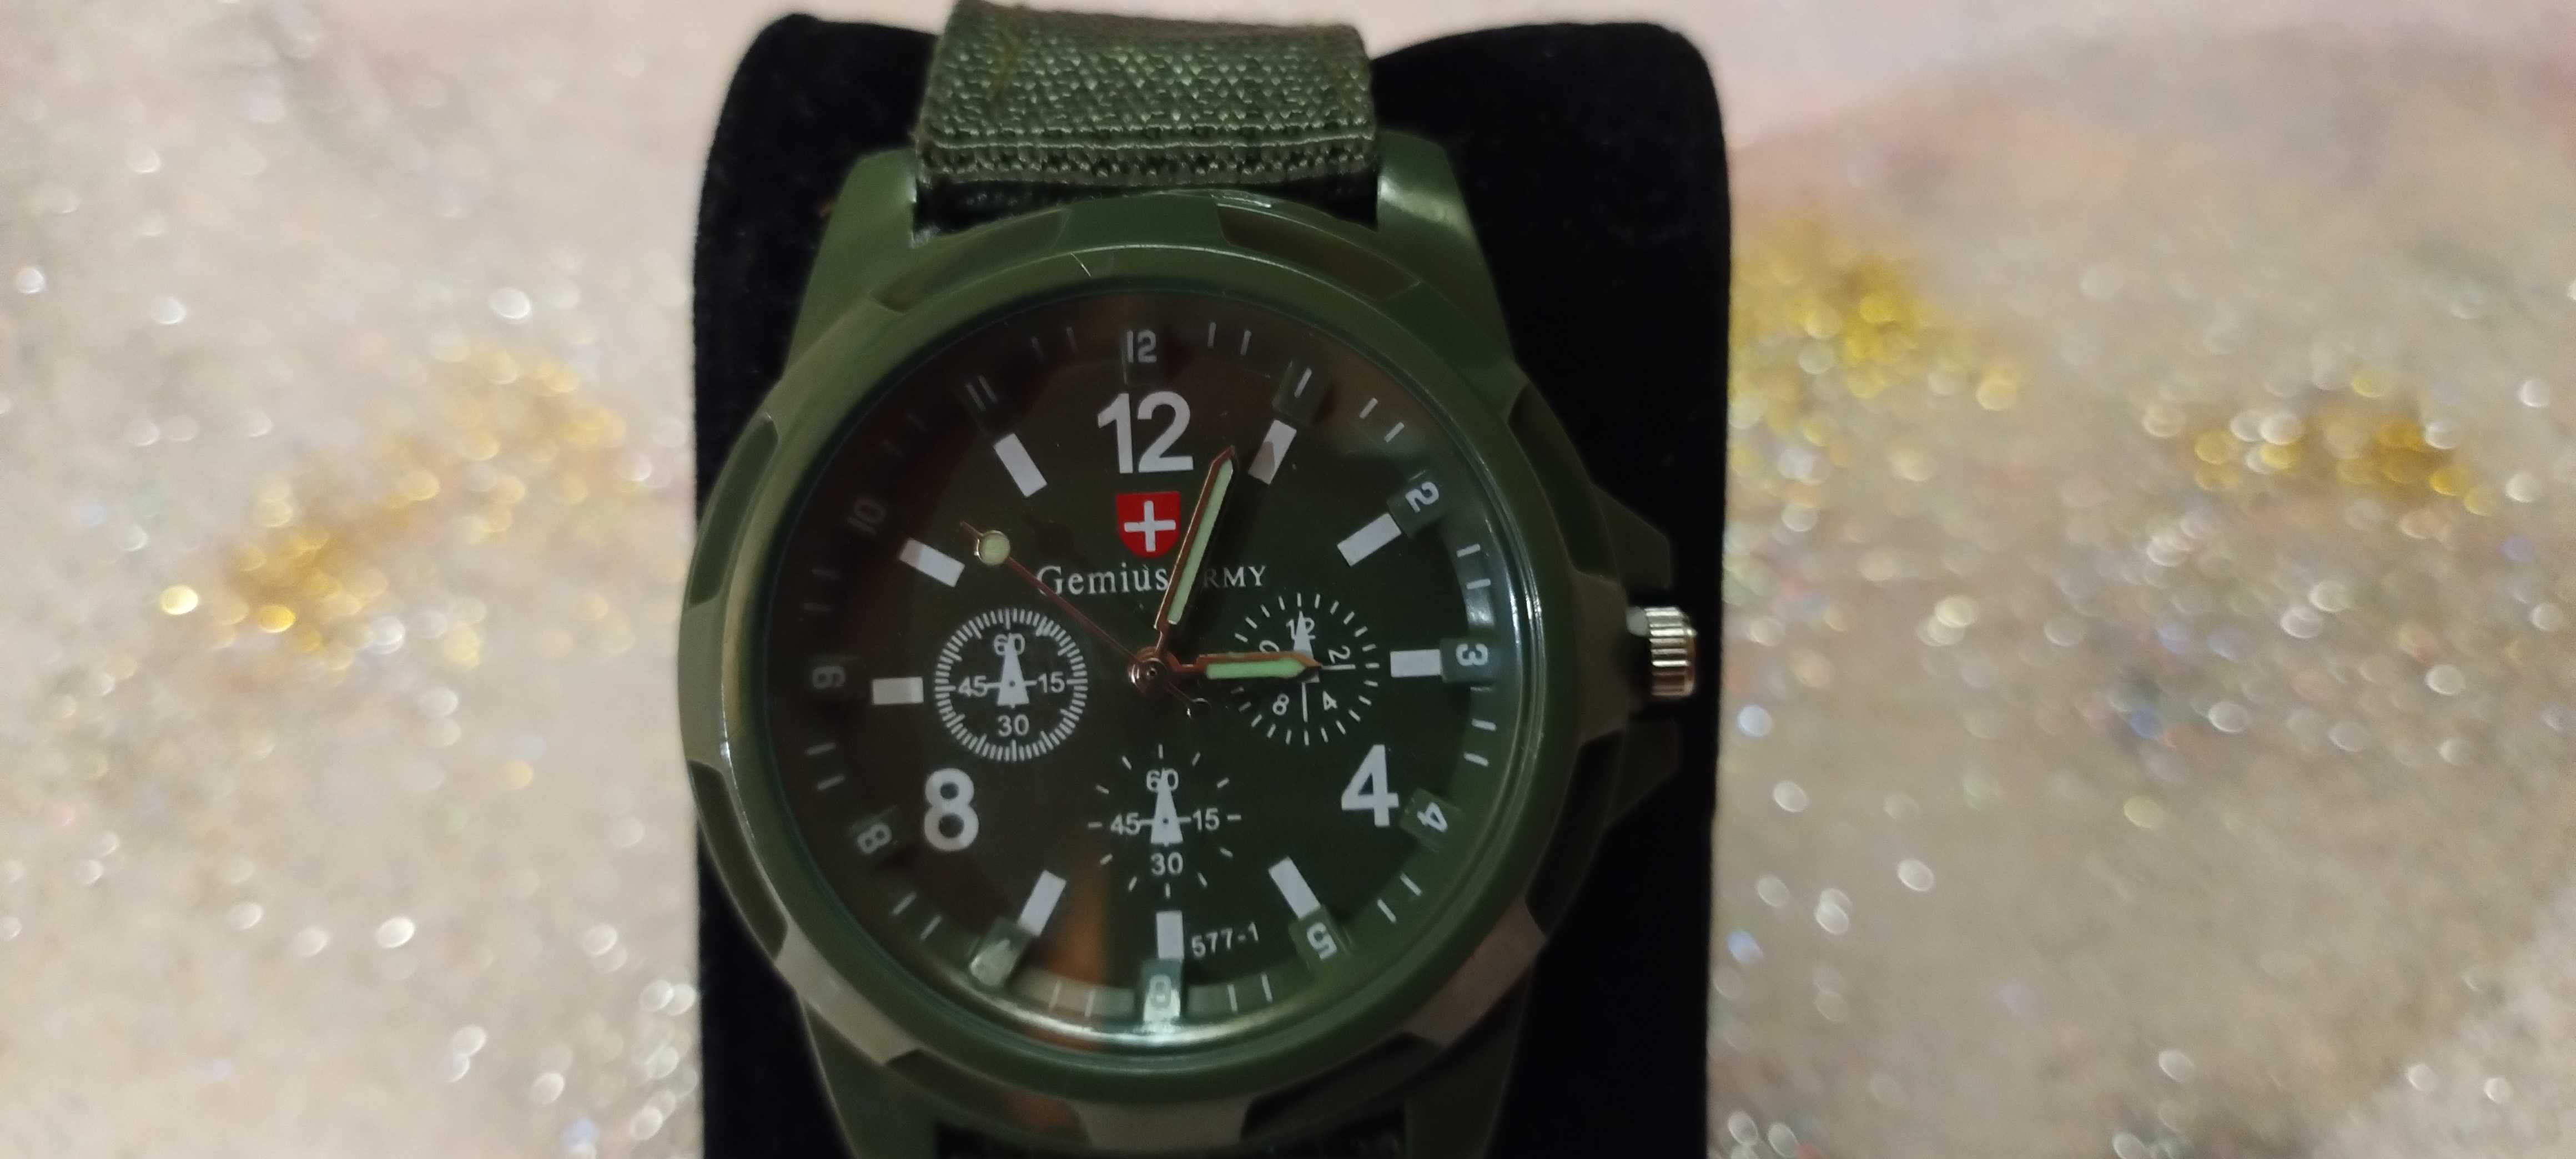 Zegarek typ wojskowy na wyprawy i wędrówki.